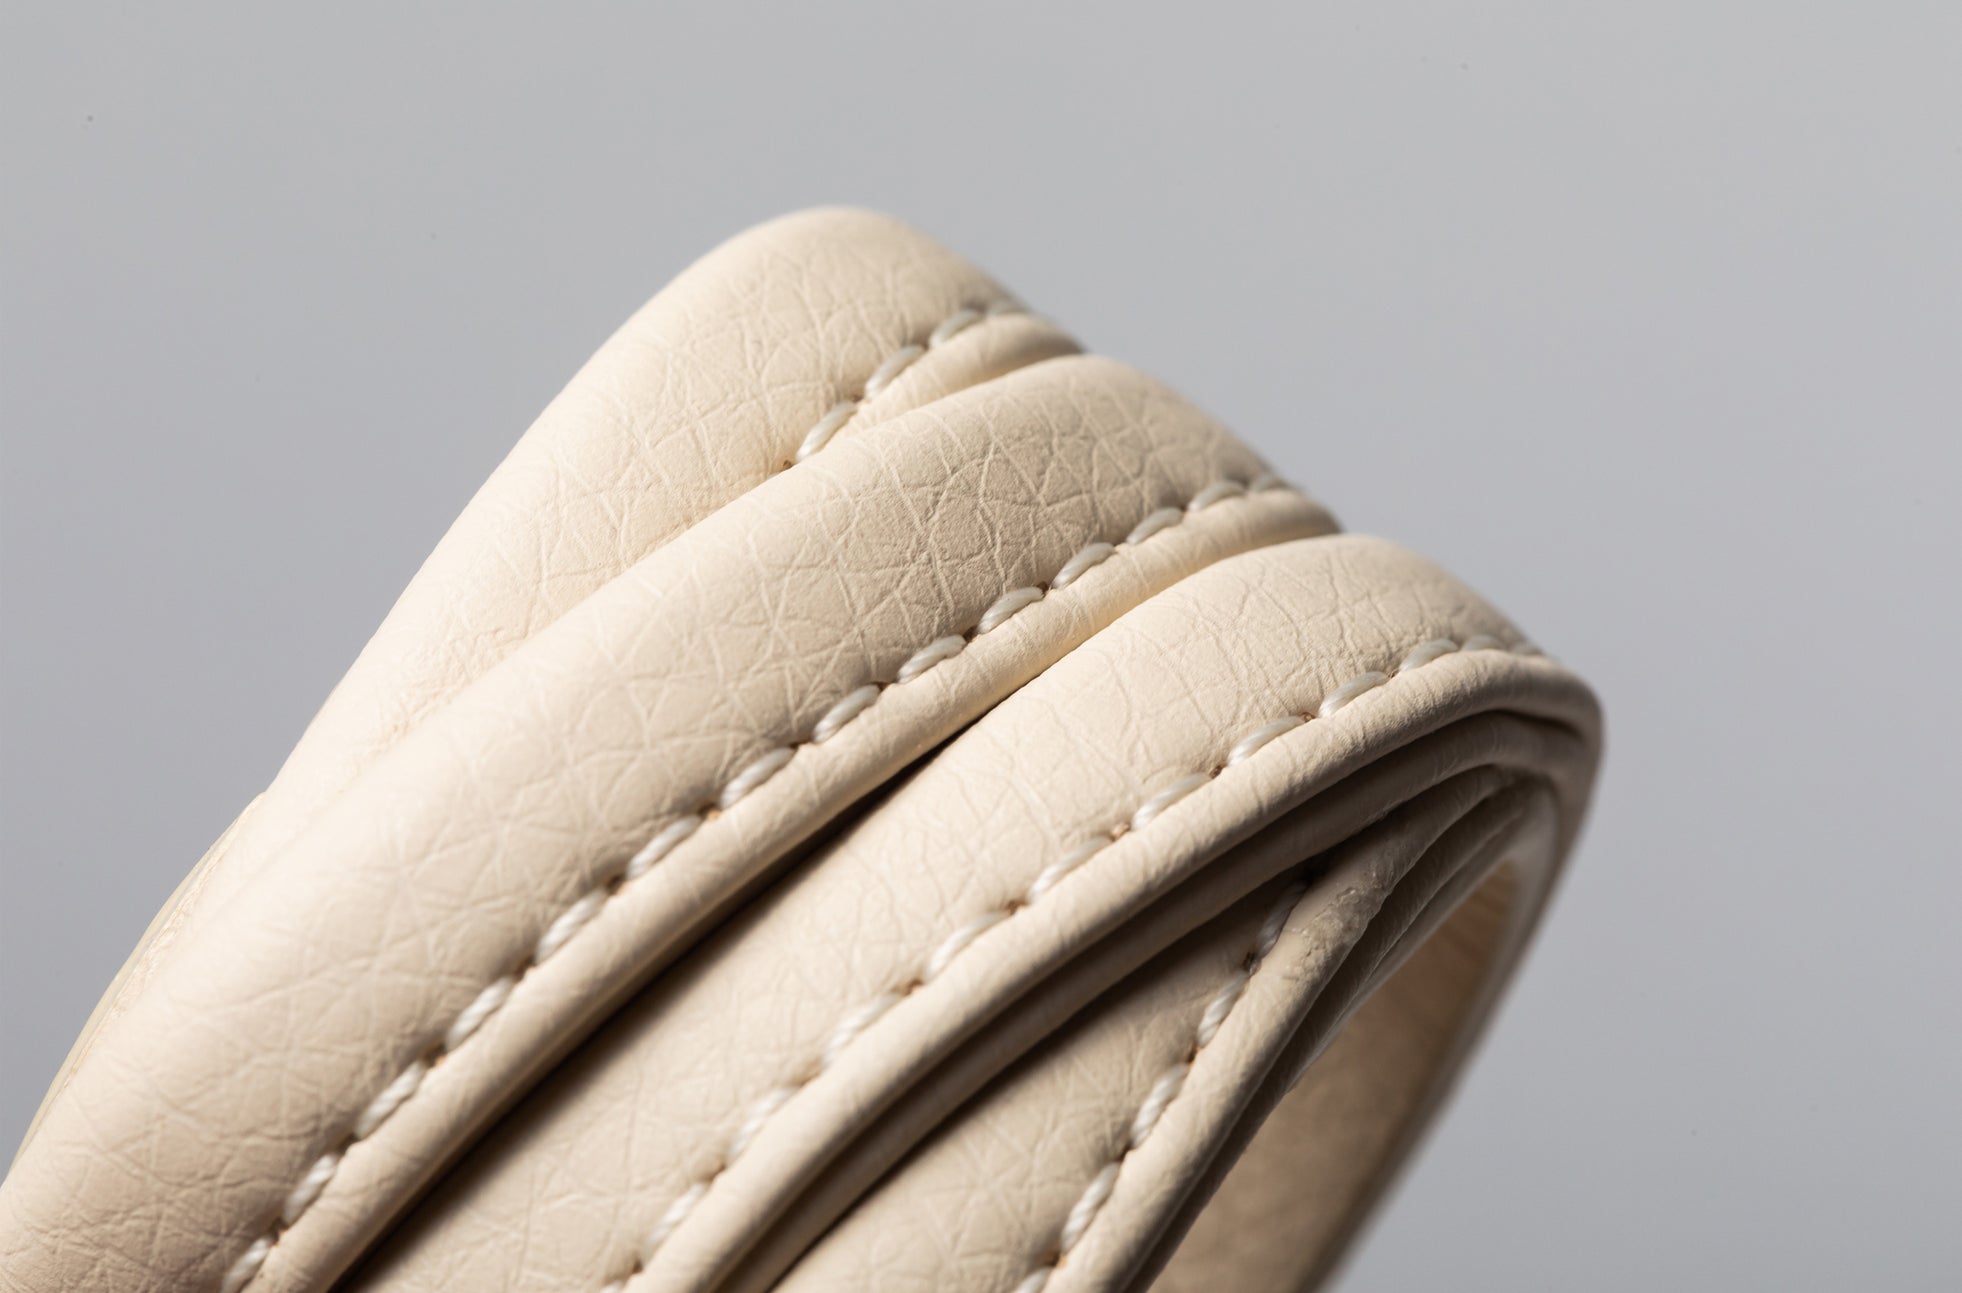 The Napkin Rings - Sample Sale in Technik-Leather in Oat image 6